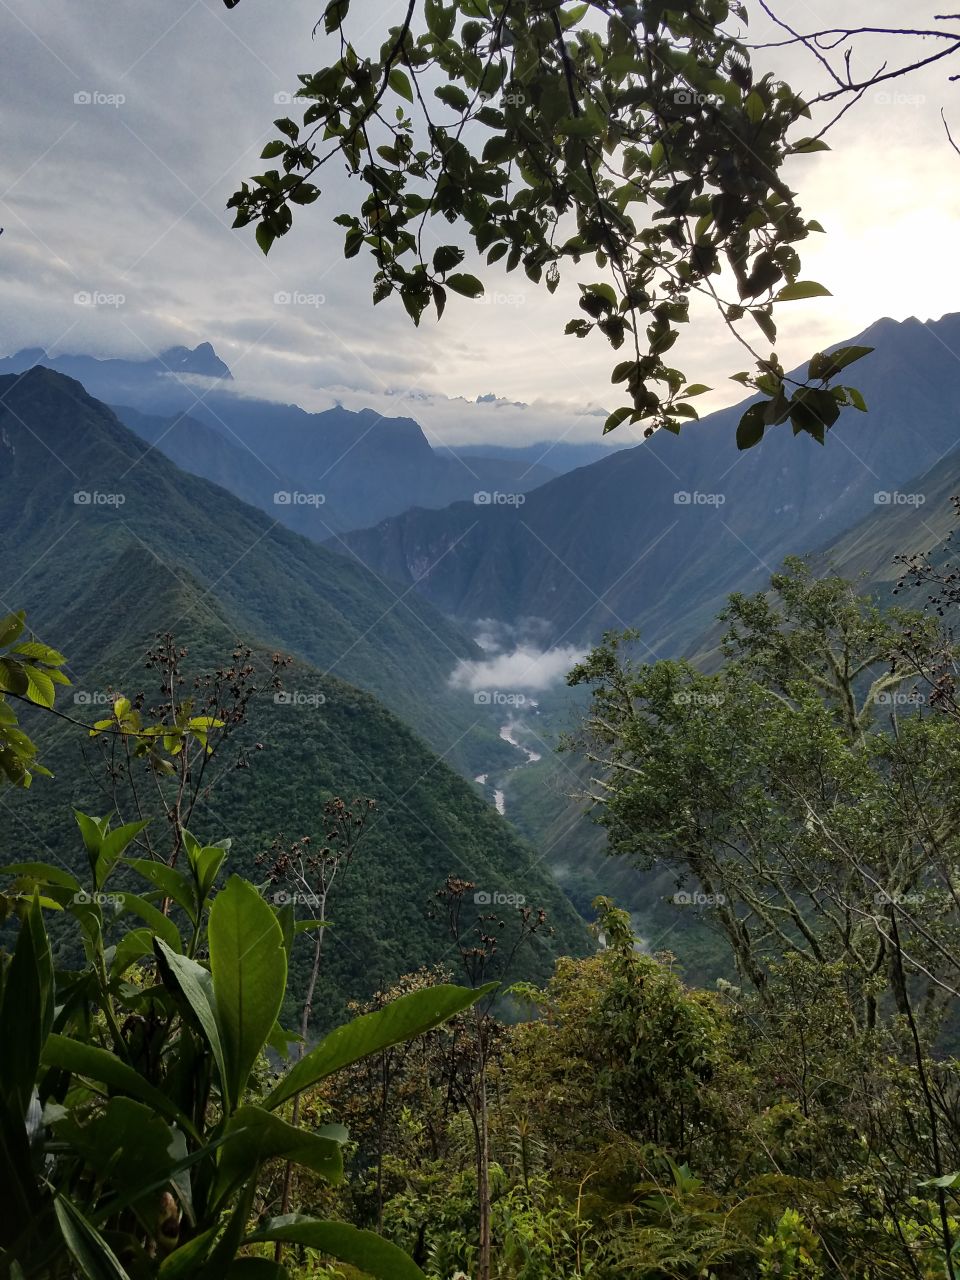 Magical Peru, from the Inca Trail